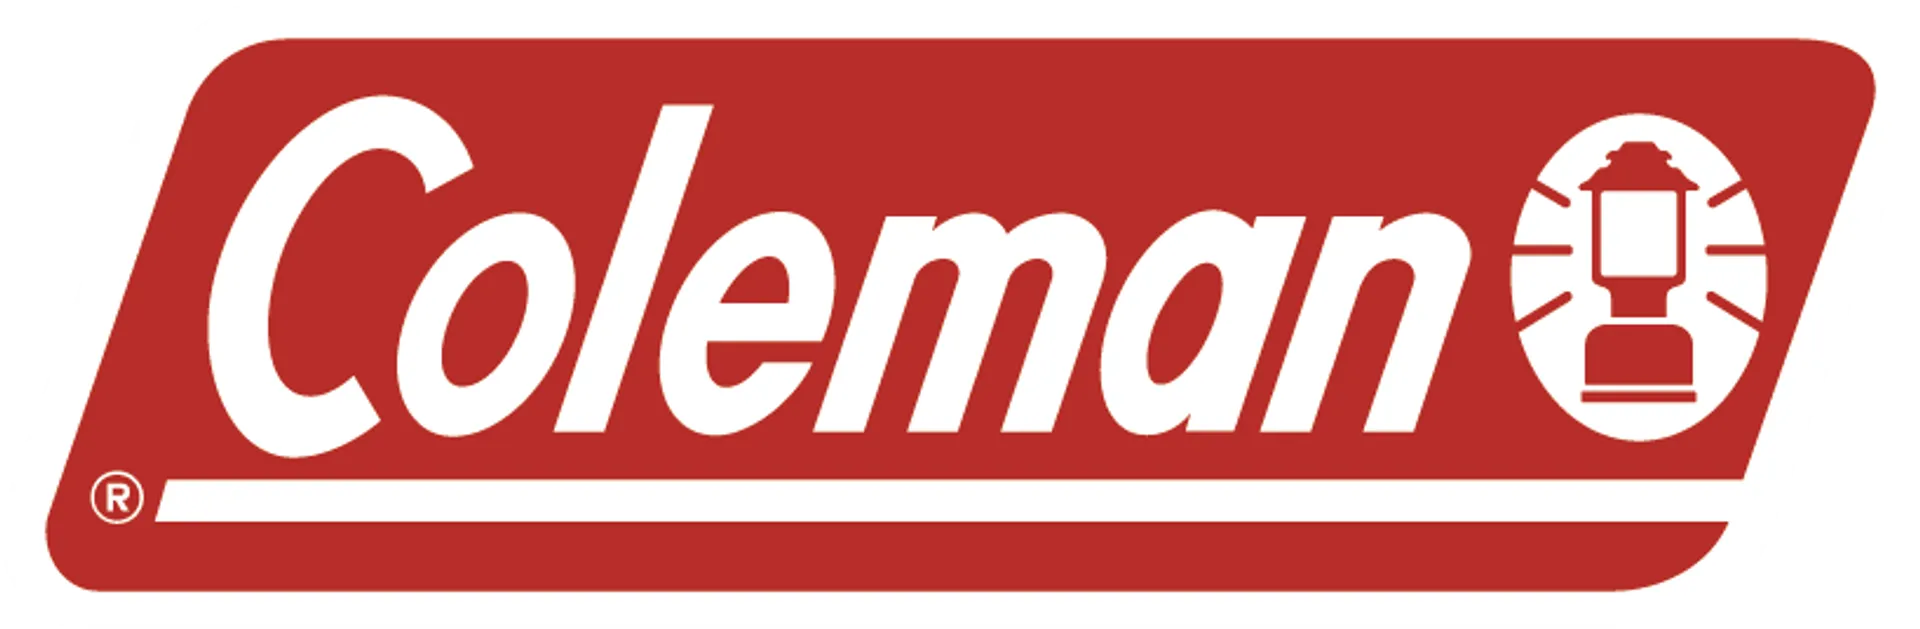 COLEMAN logo